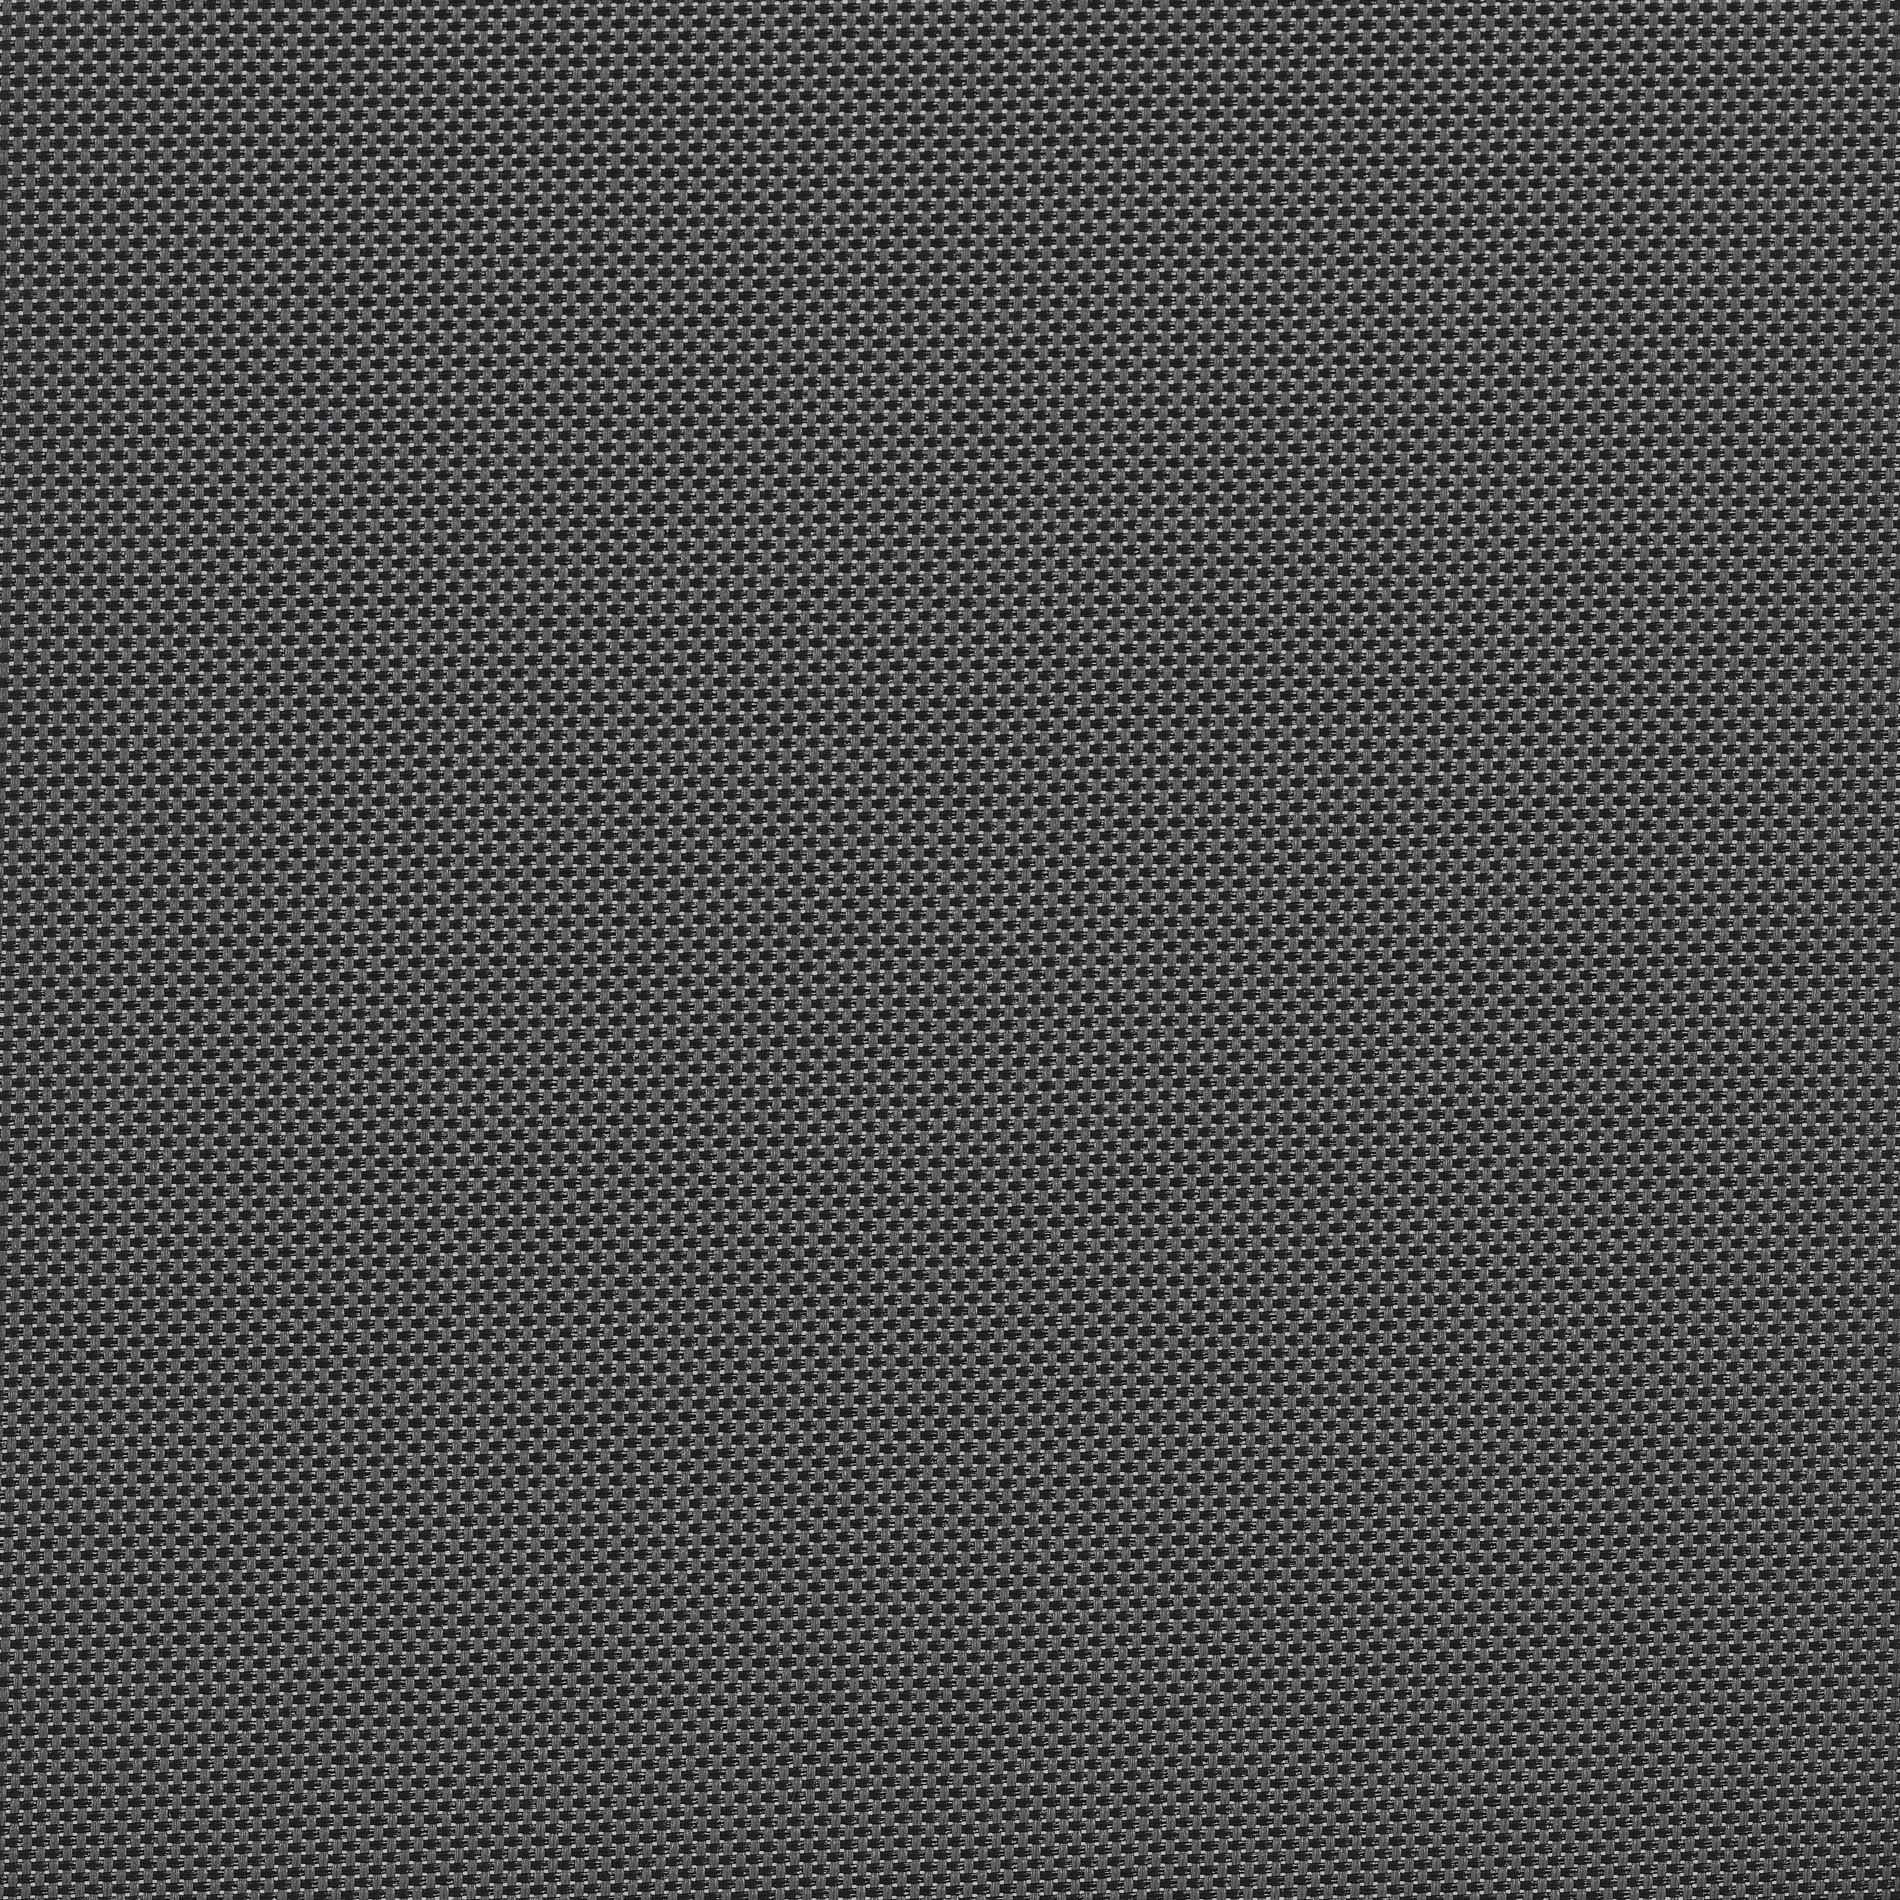 Altex - Fabric - NATTÉ 3% - Grey/Charcoal - 901930